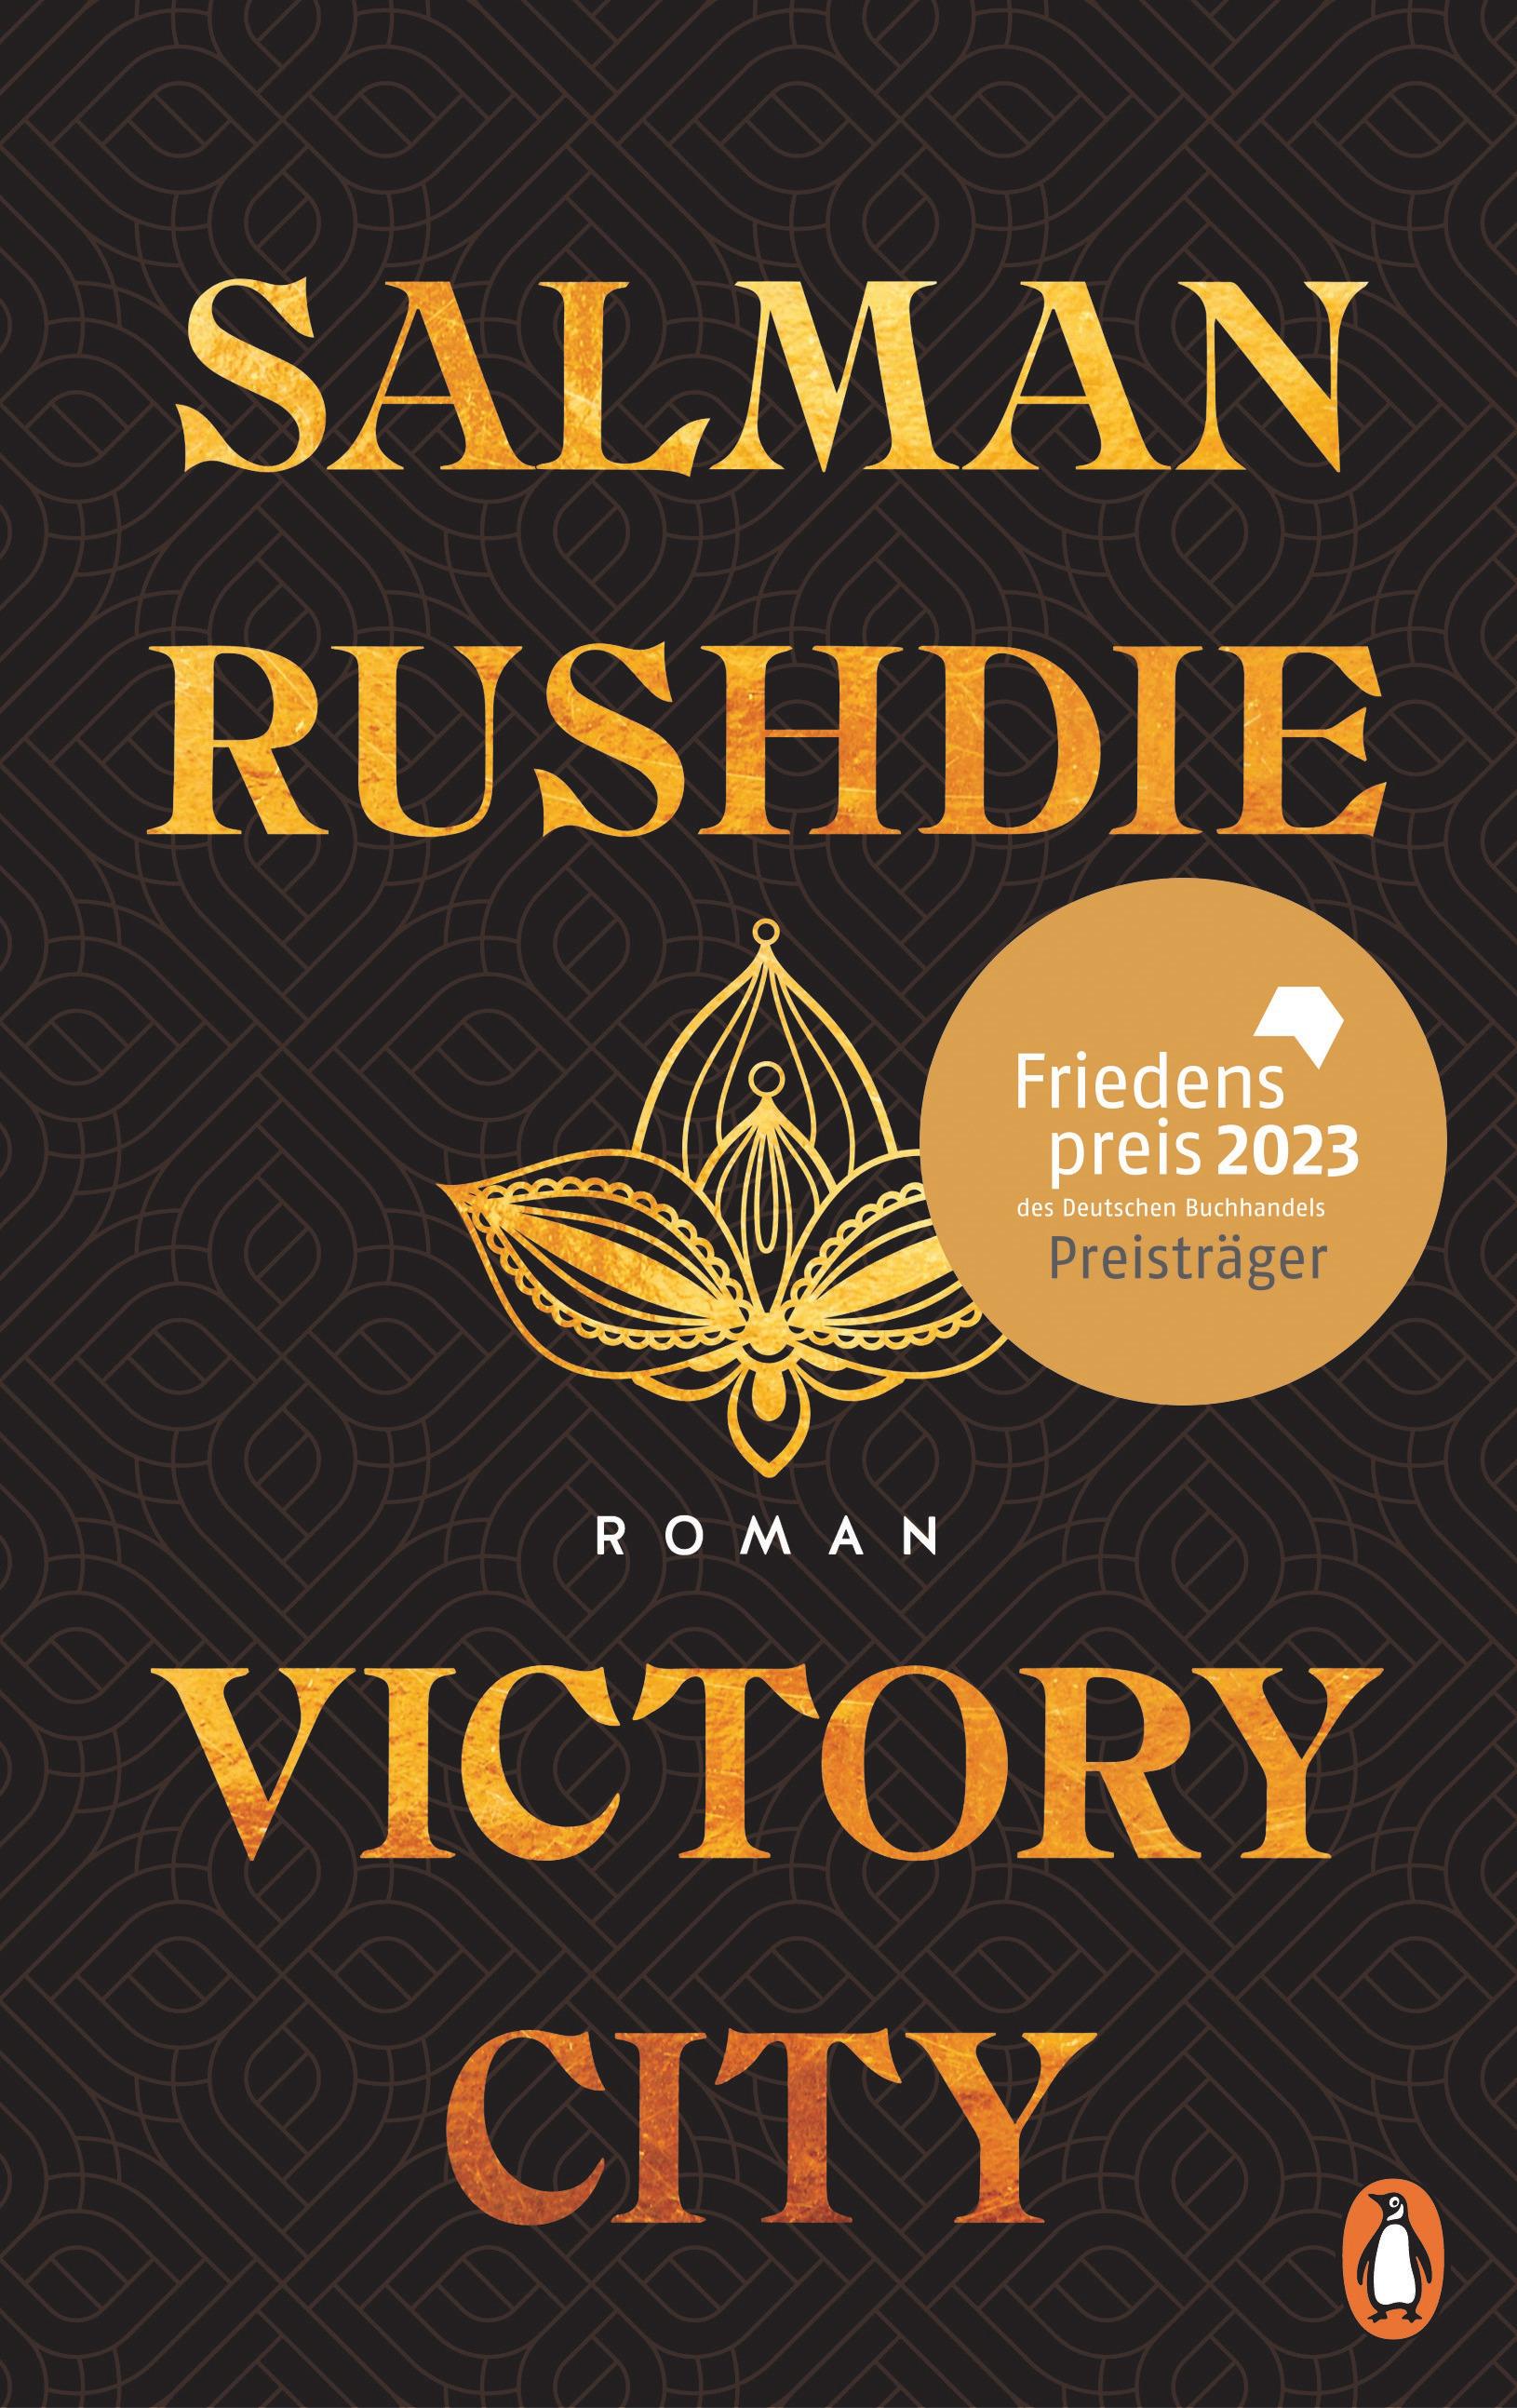 Victory City Roman - Der große neue Roman des unerschrockenen Kämpfers für die Meinungsfreiheit – Friedenspreis für Salman Rushdie 2023